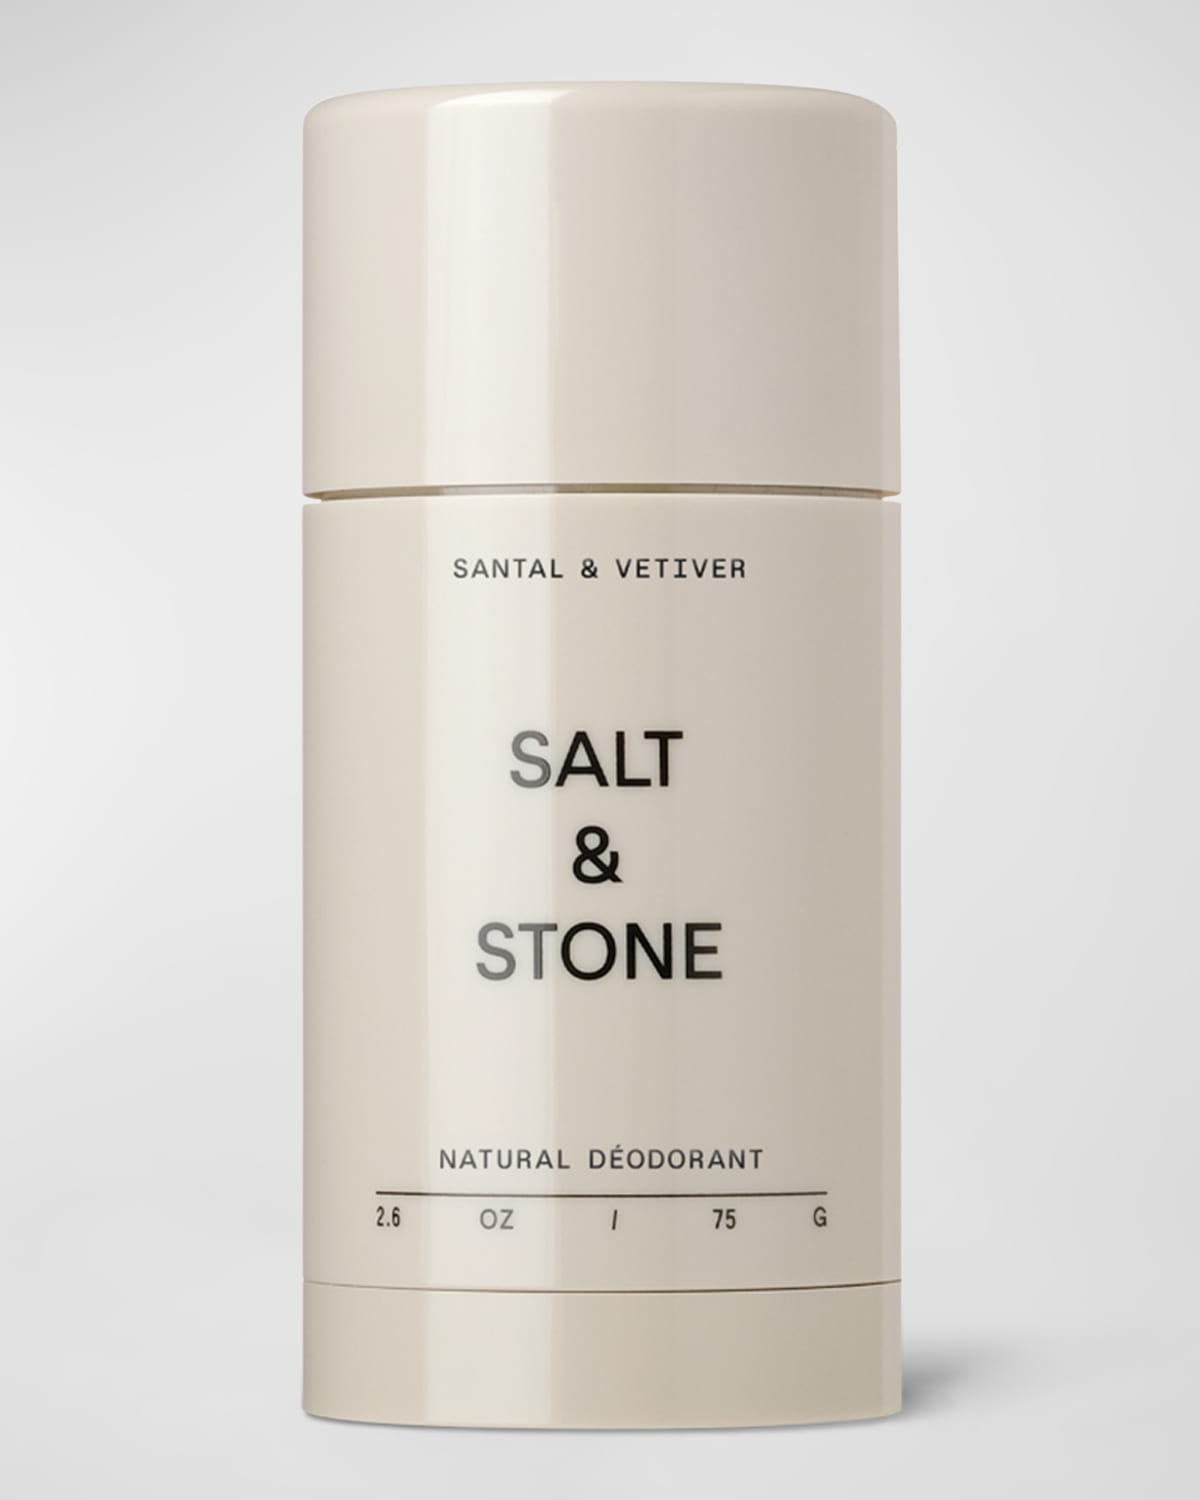 Shop Salt & Stone Natural Deodorant, Santal & Vetiver